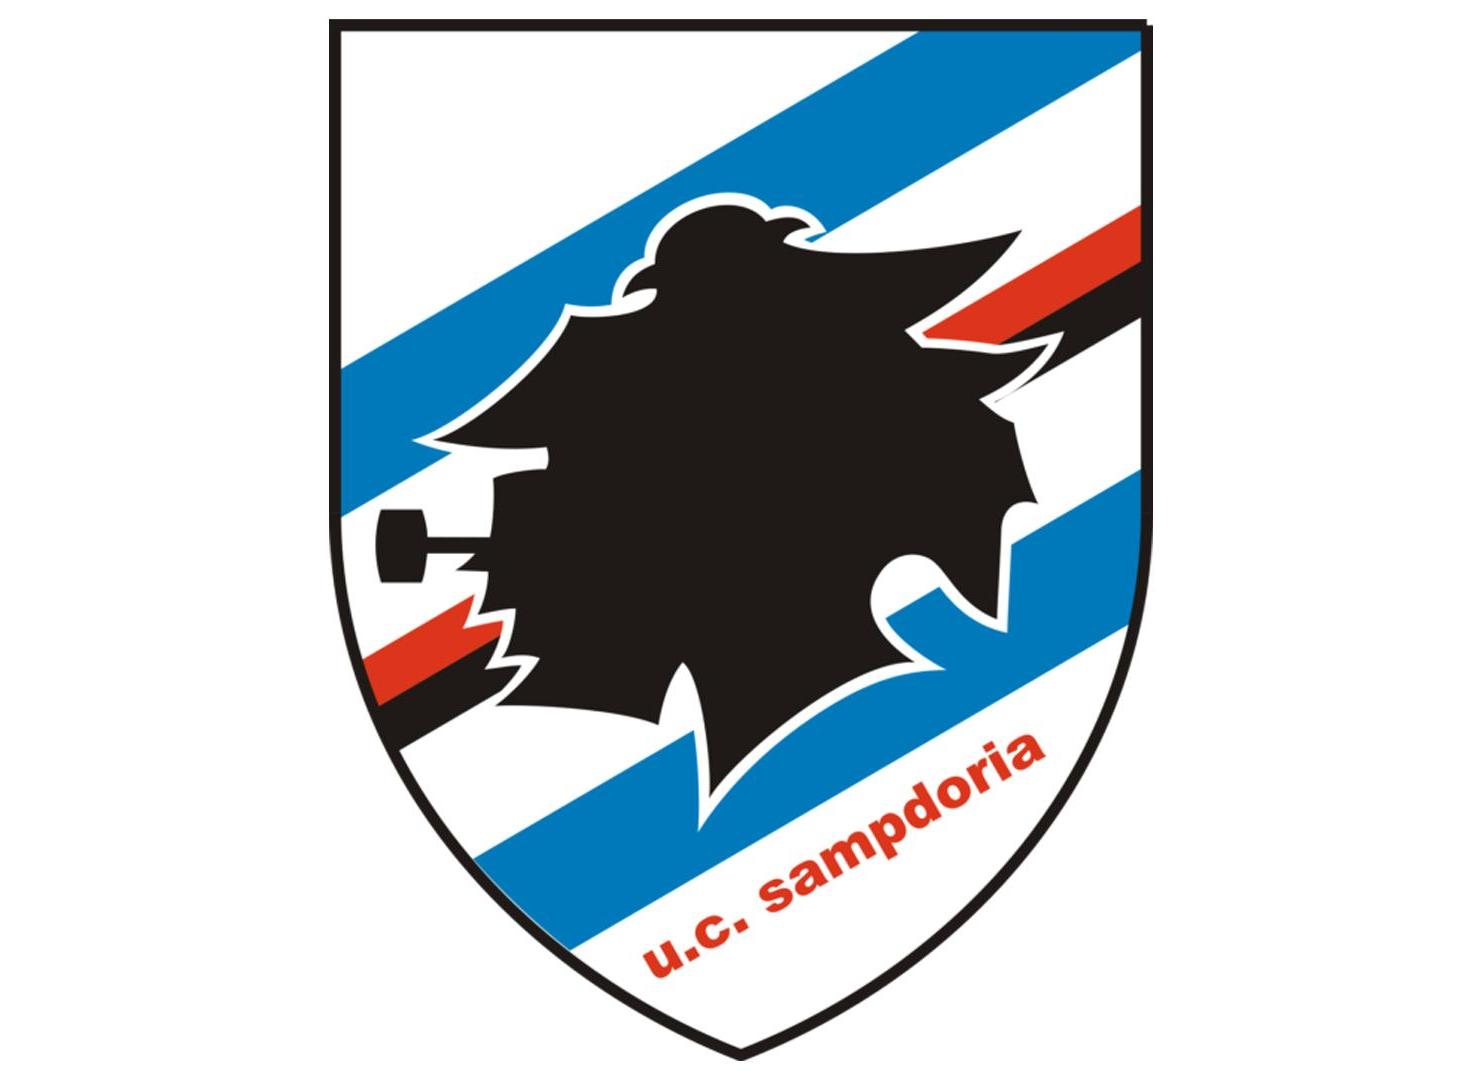 桑普多利亚足球俱乐部